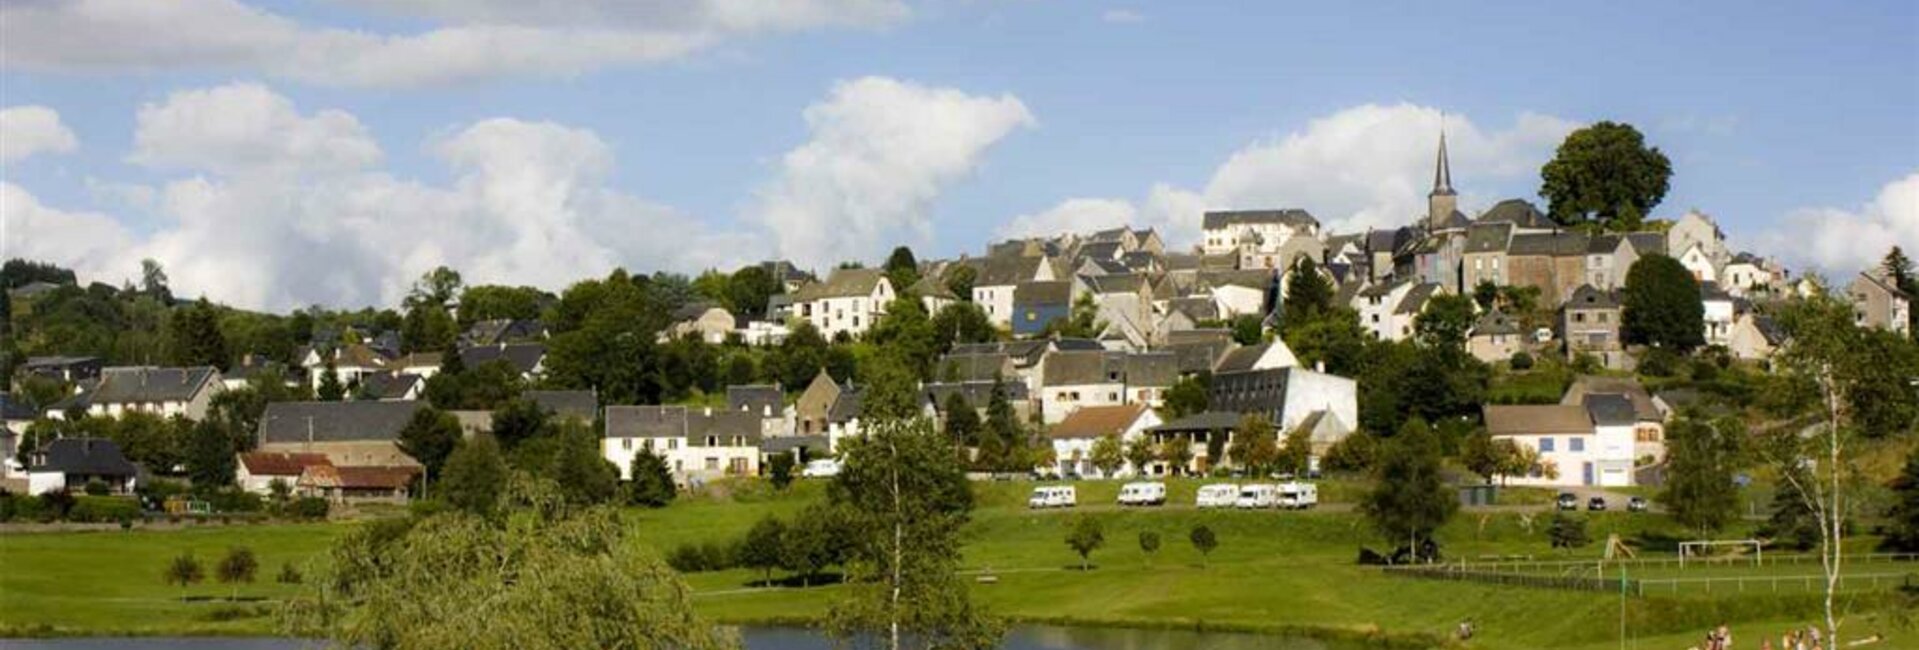 Histoire Patrimoine Commune Auvergne Puy-de-Dôme